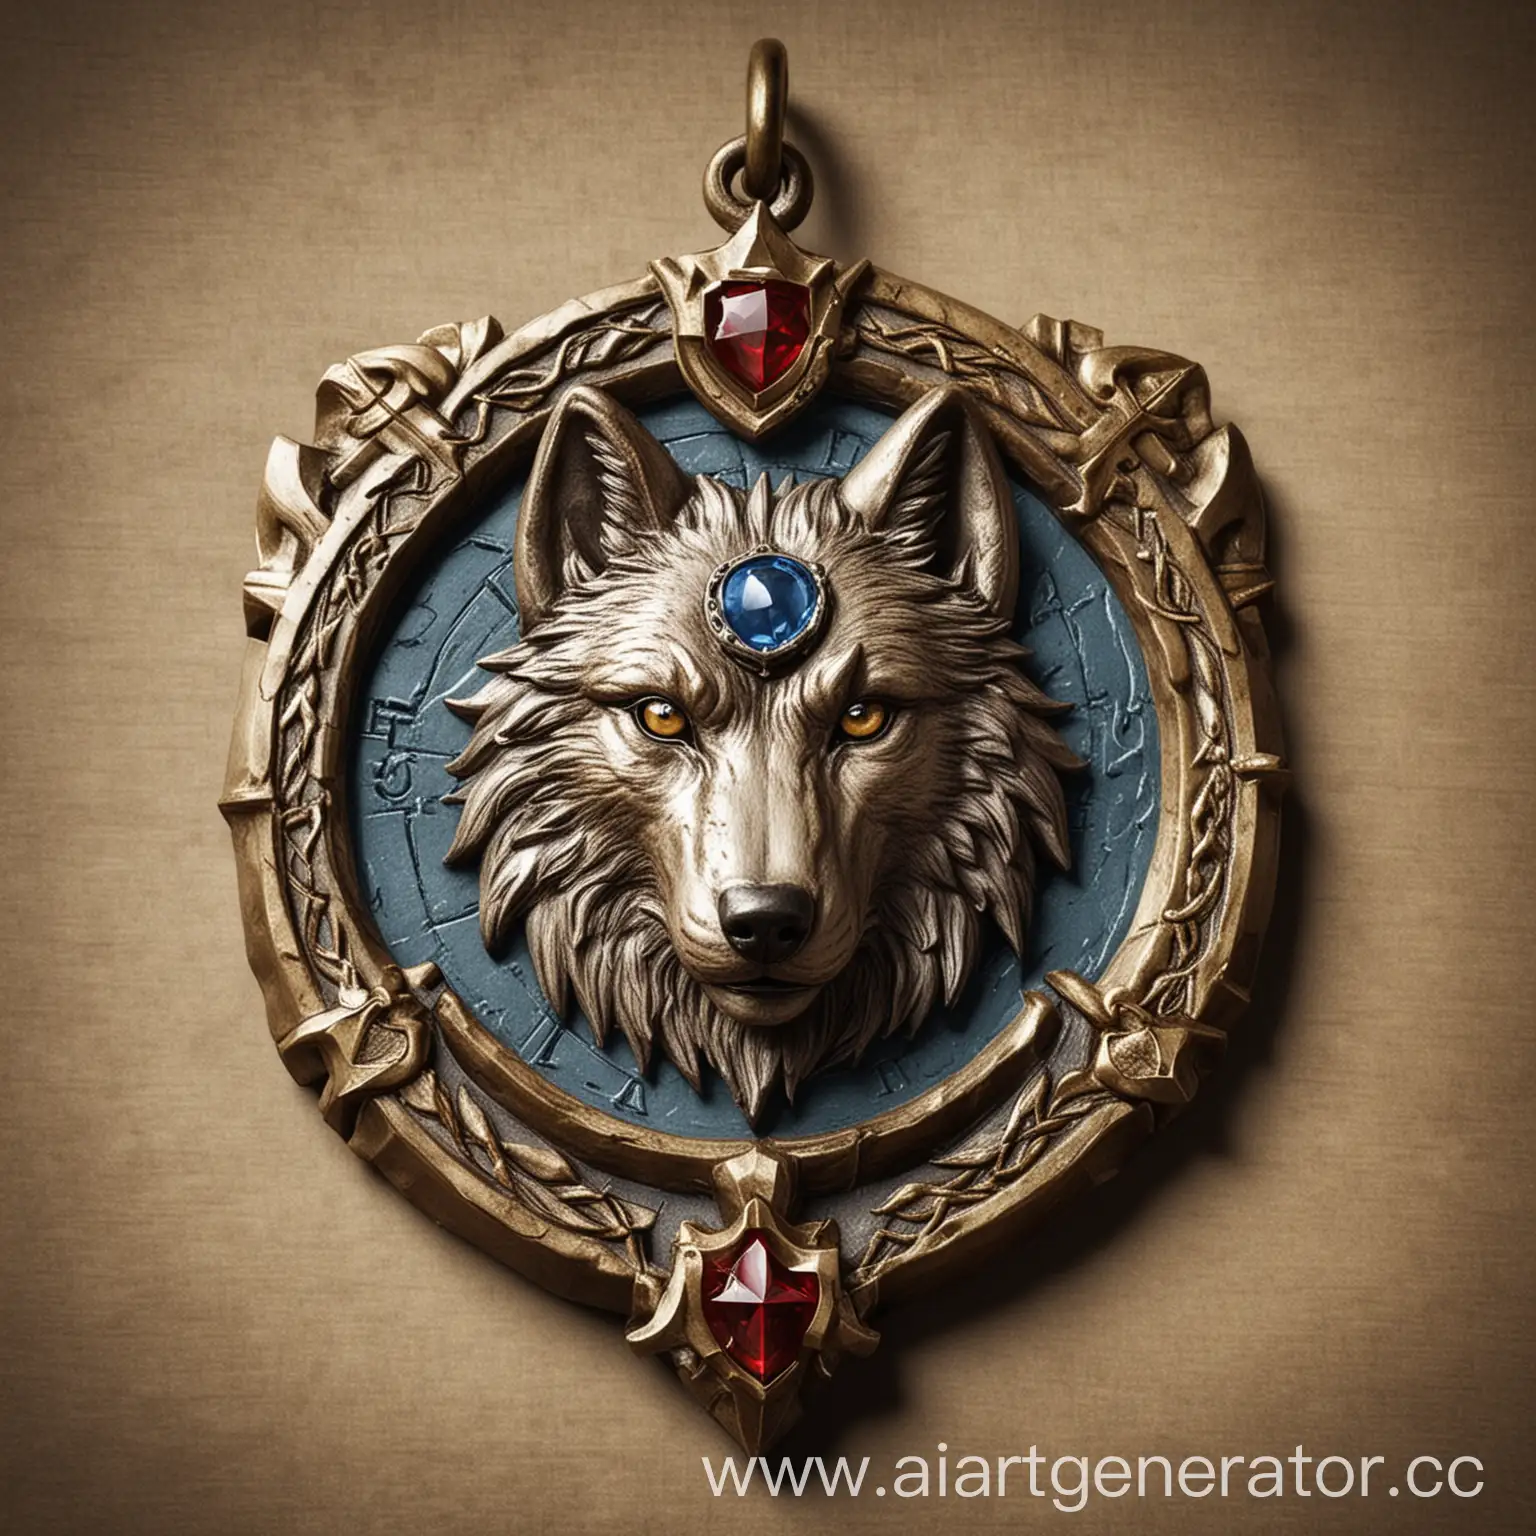 Нужен амулет, который покажет принадлежность к королевским егерям. Нужен рисунок божественного волка на нем, а также герб королевства.